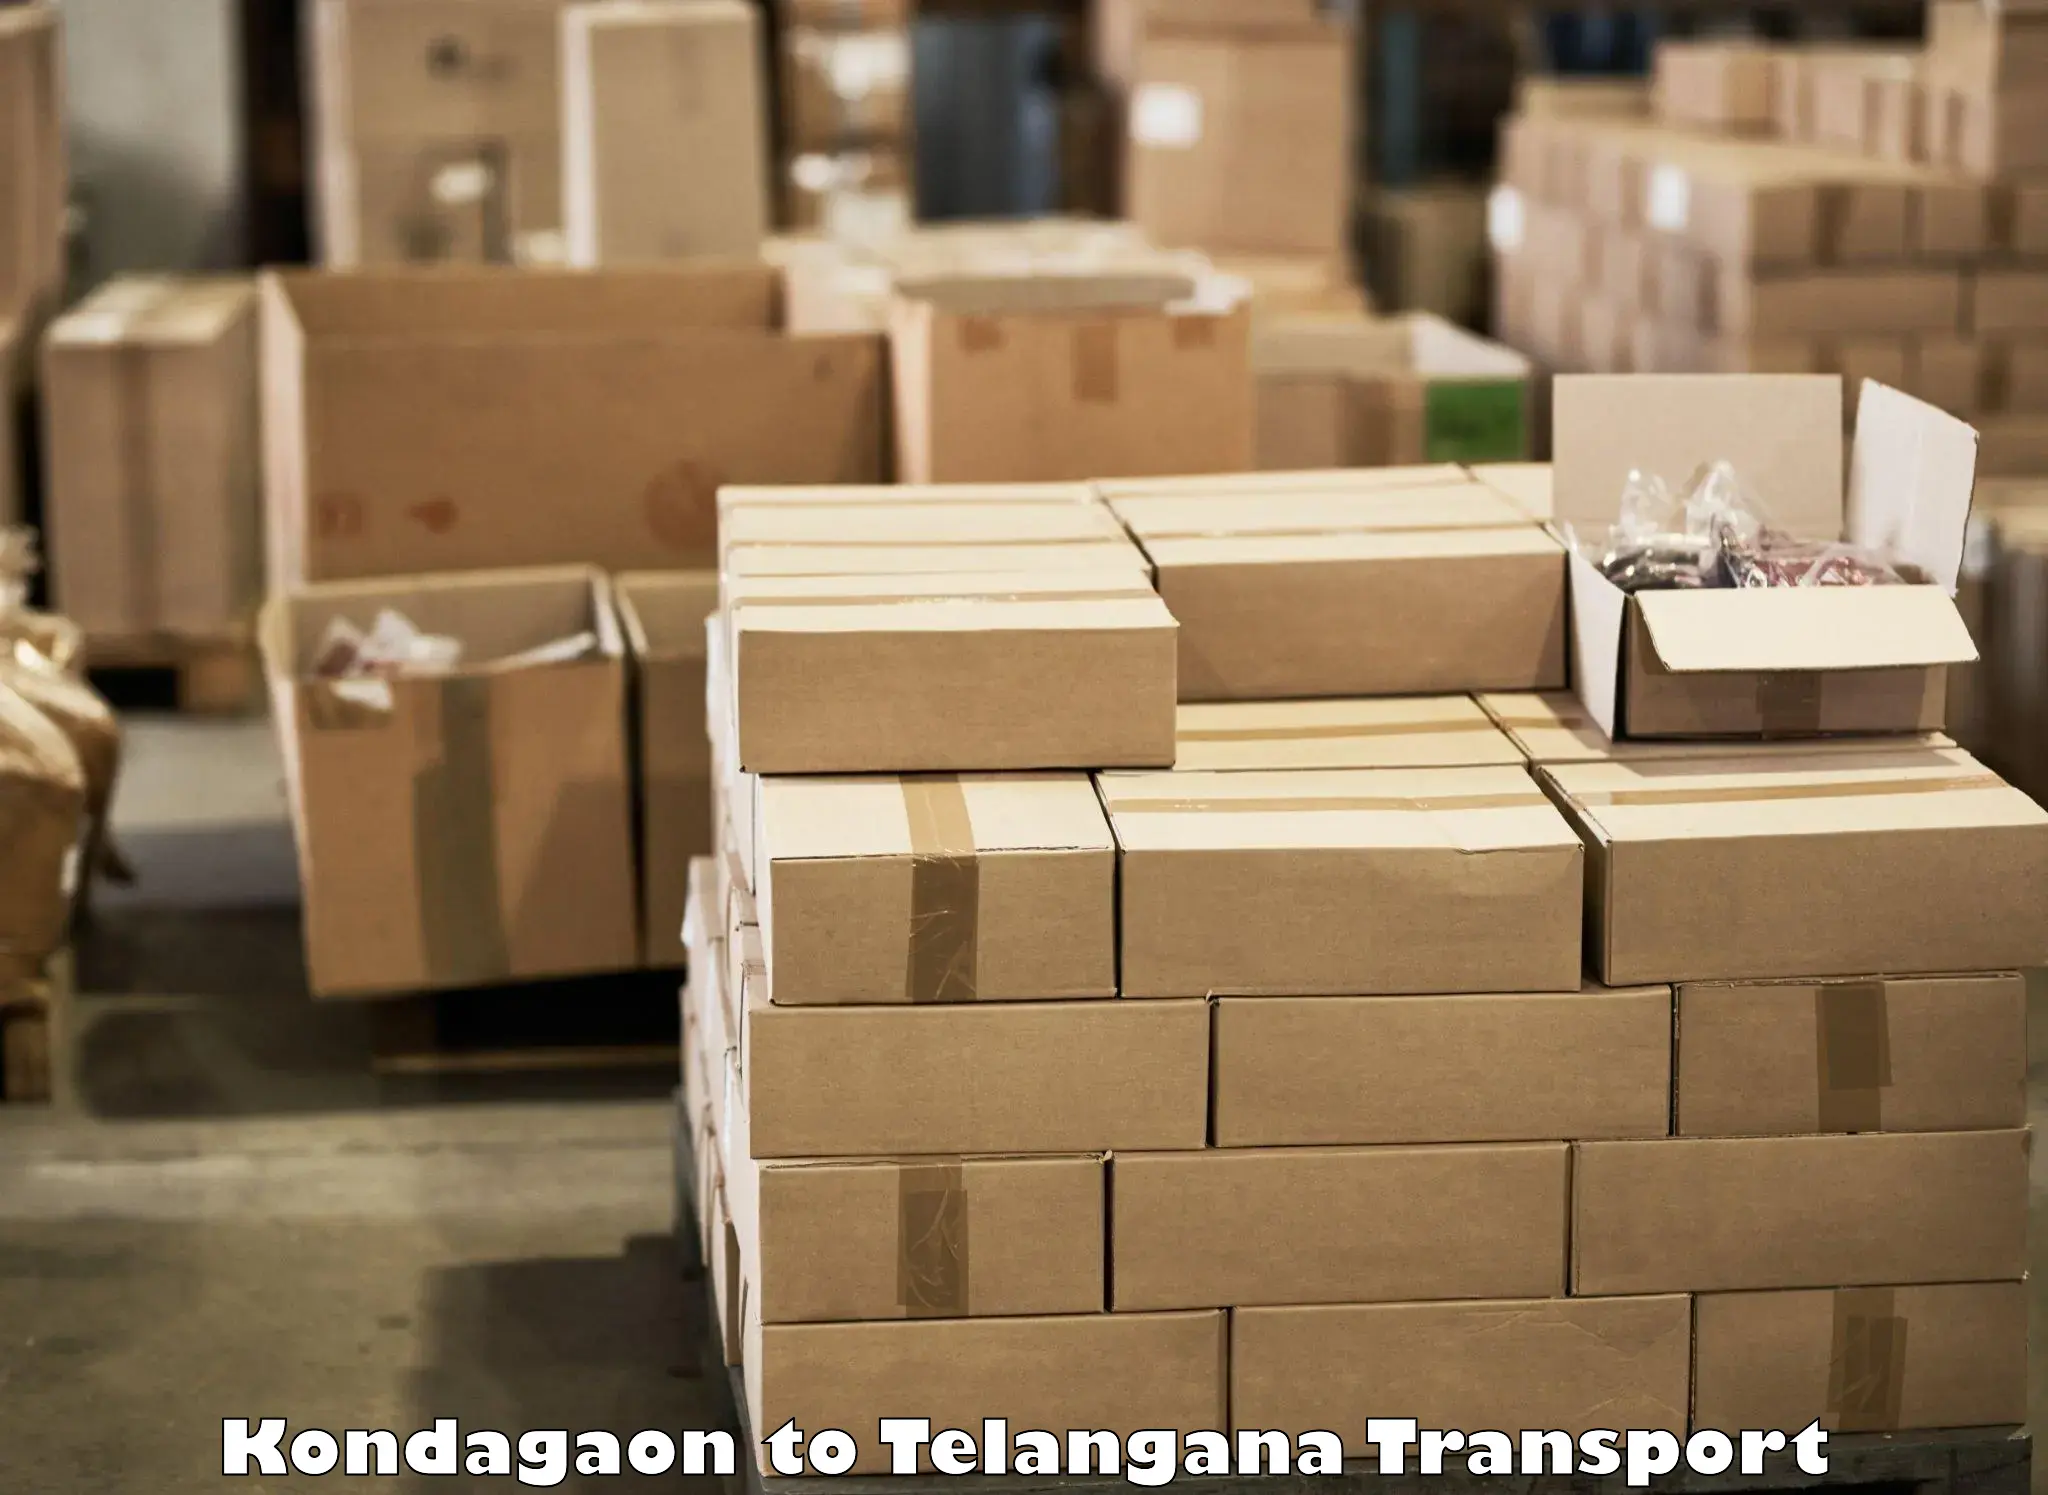 Two wheeler parcel service Kondagaon to Aswaraopeta